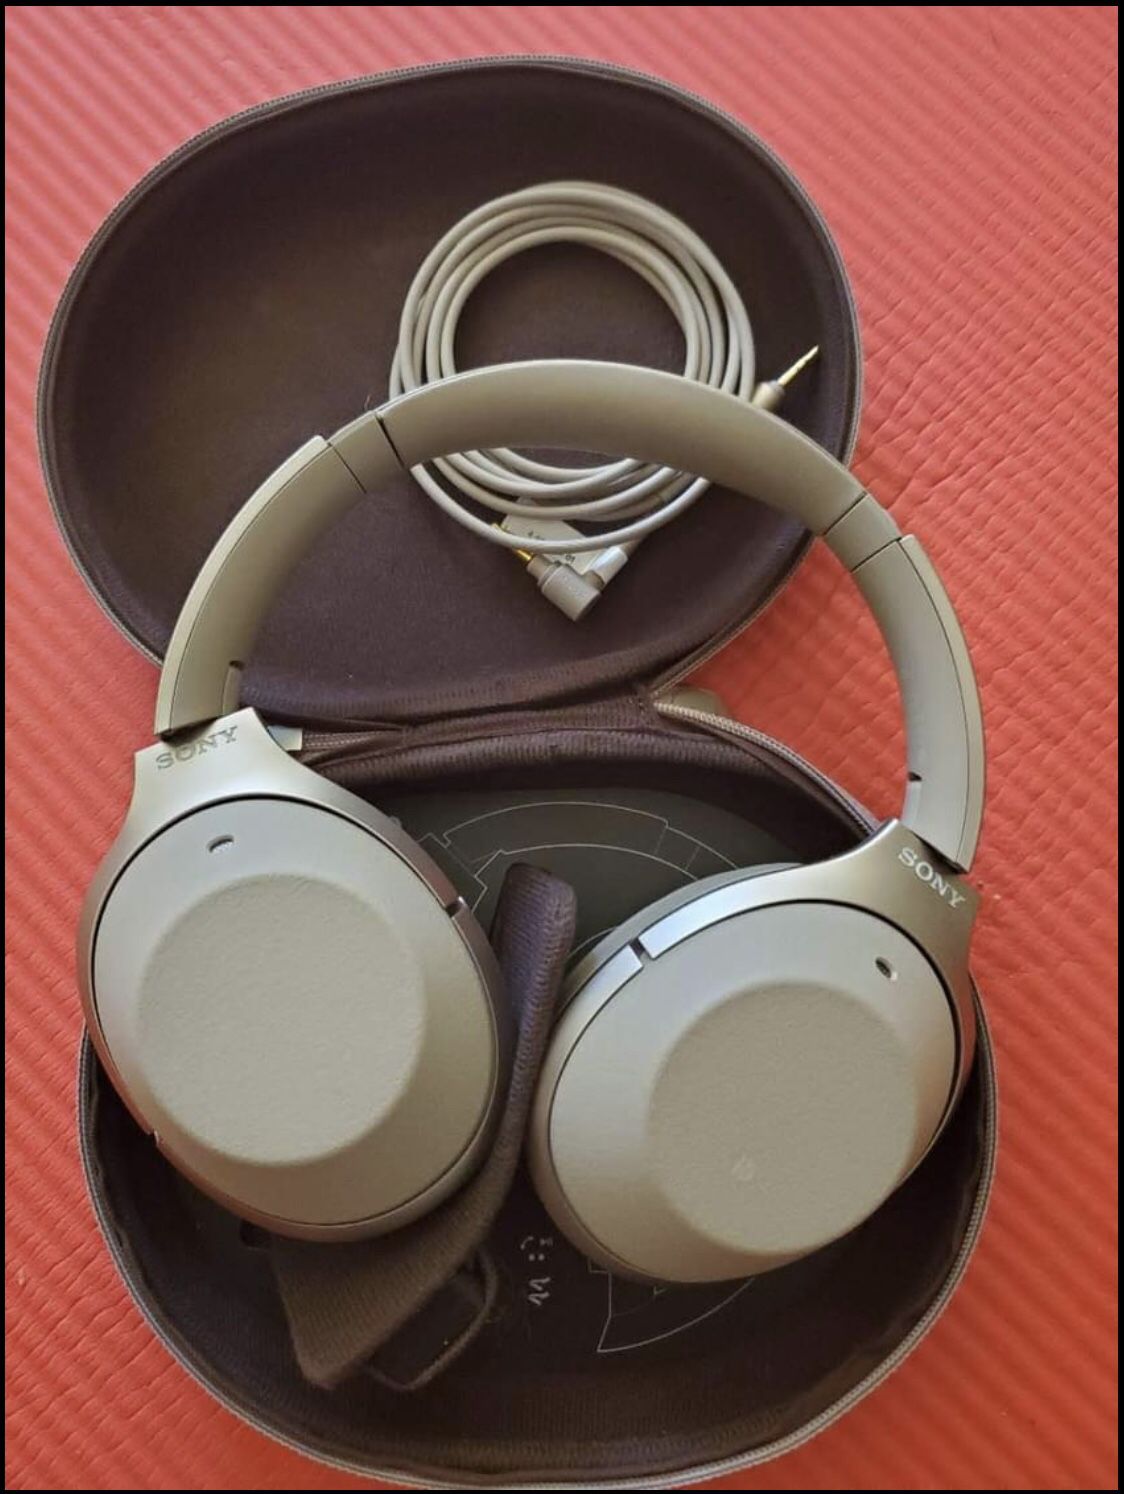 Sony 1000XM2 headphones